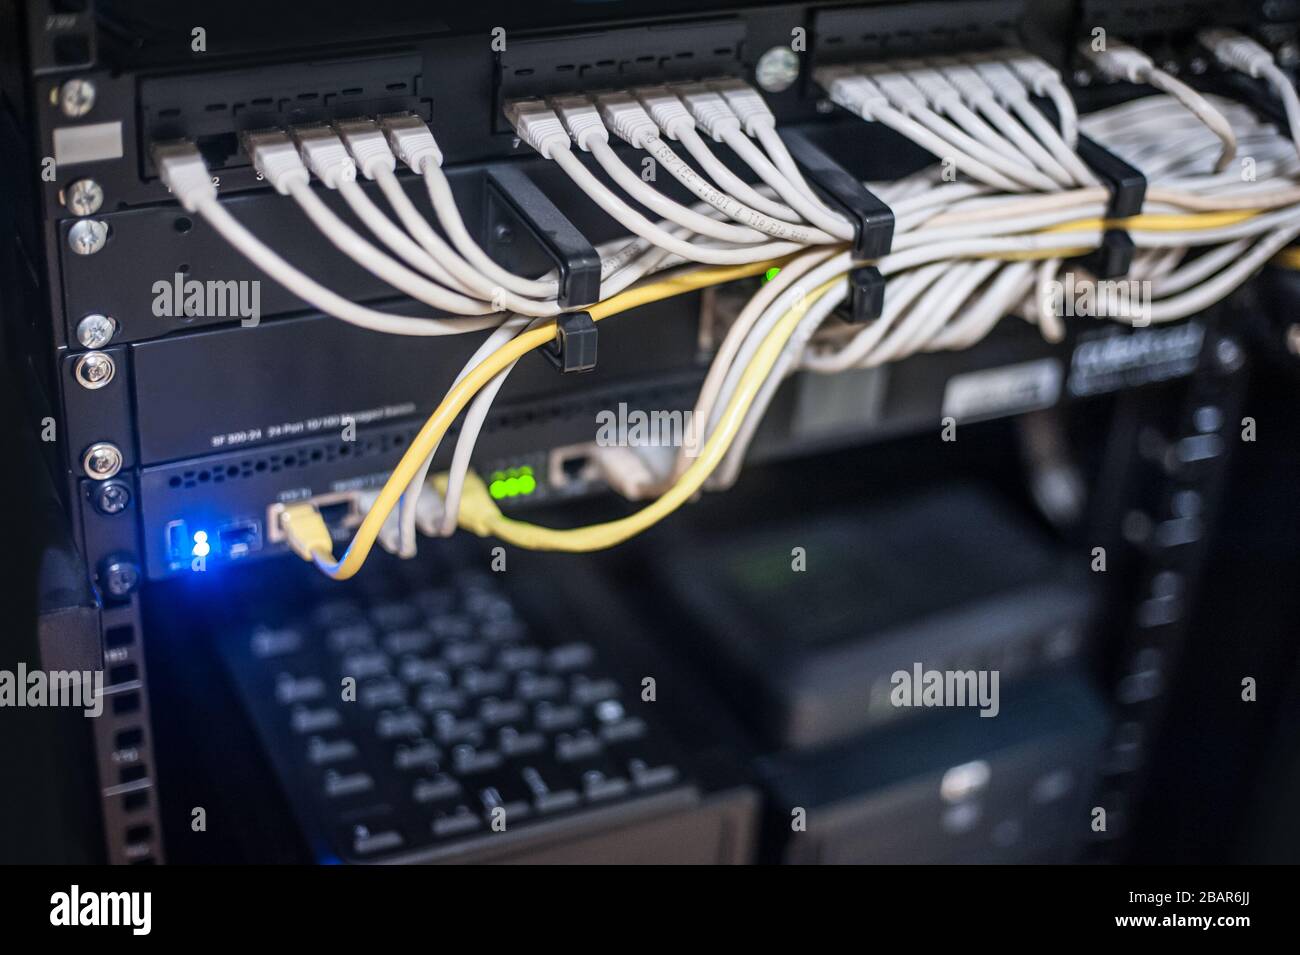 Serveur réseau, commutateur et routeurs. De nombreux fils connectent des  serveurs Internet. Racks avec équipement informatique Photo Stock - Alamy